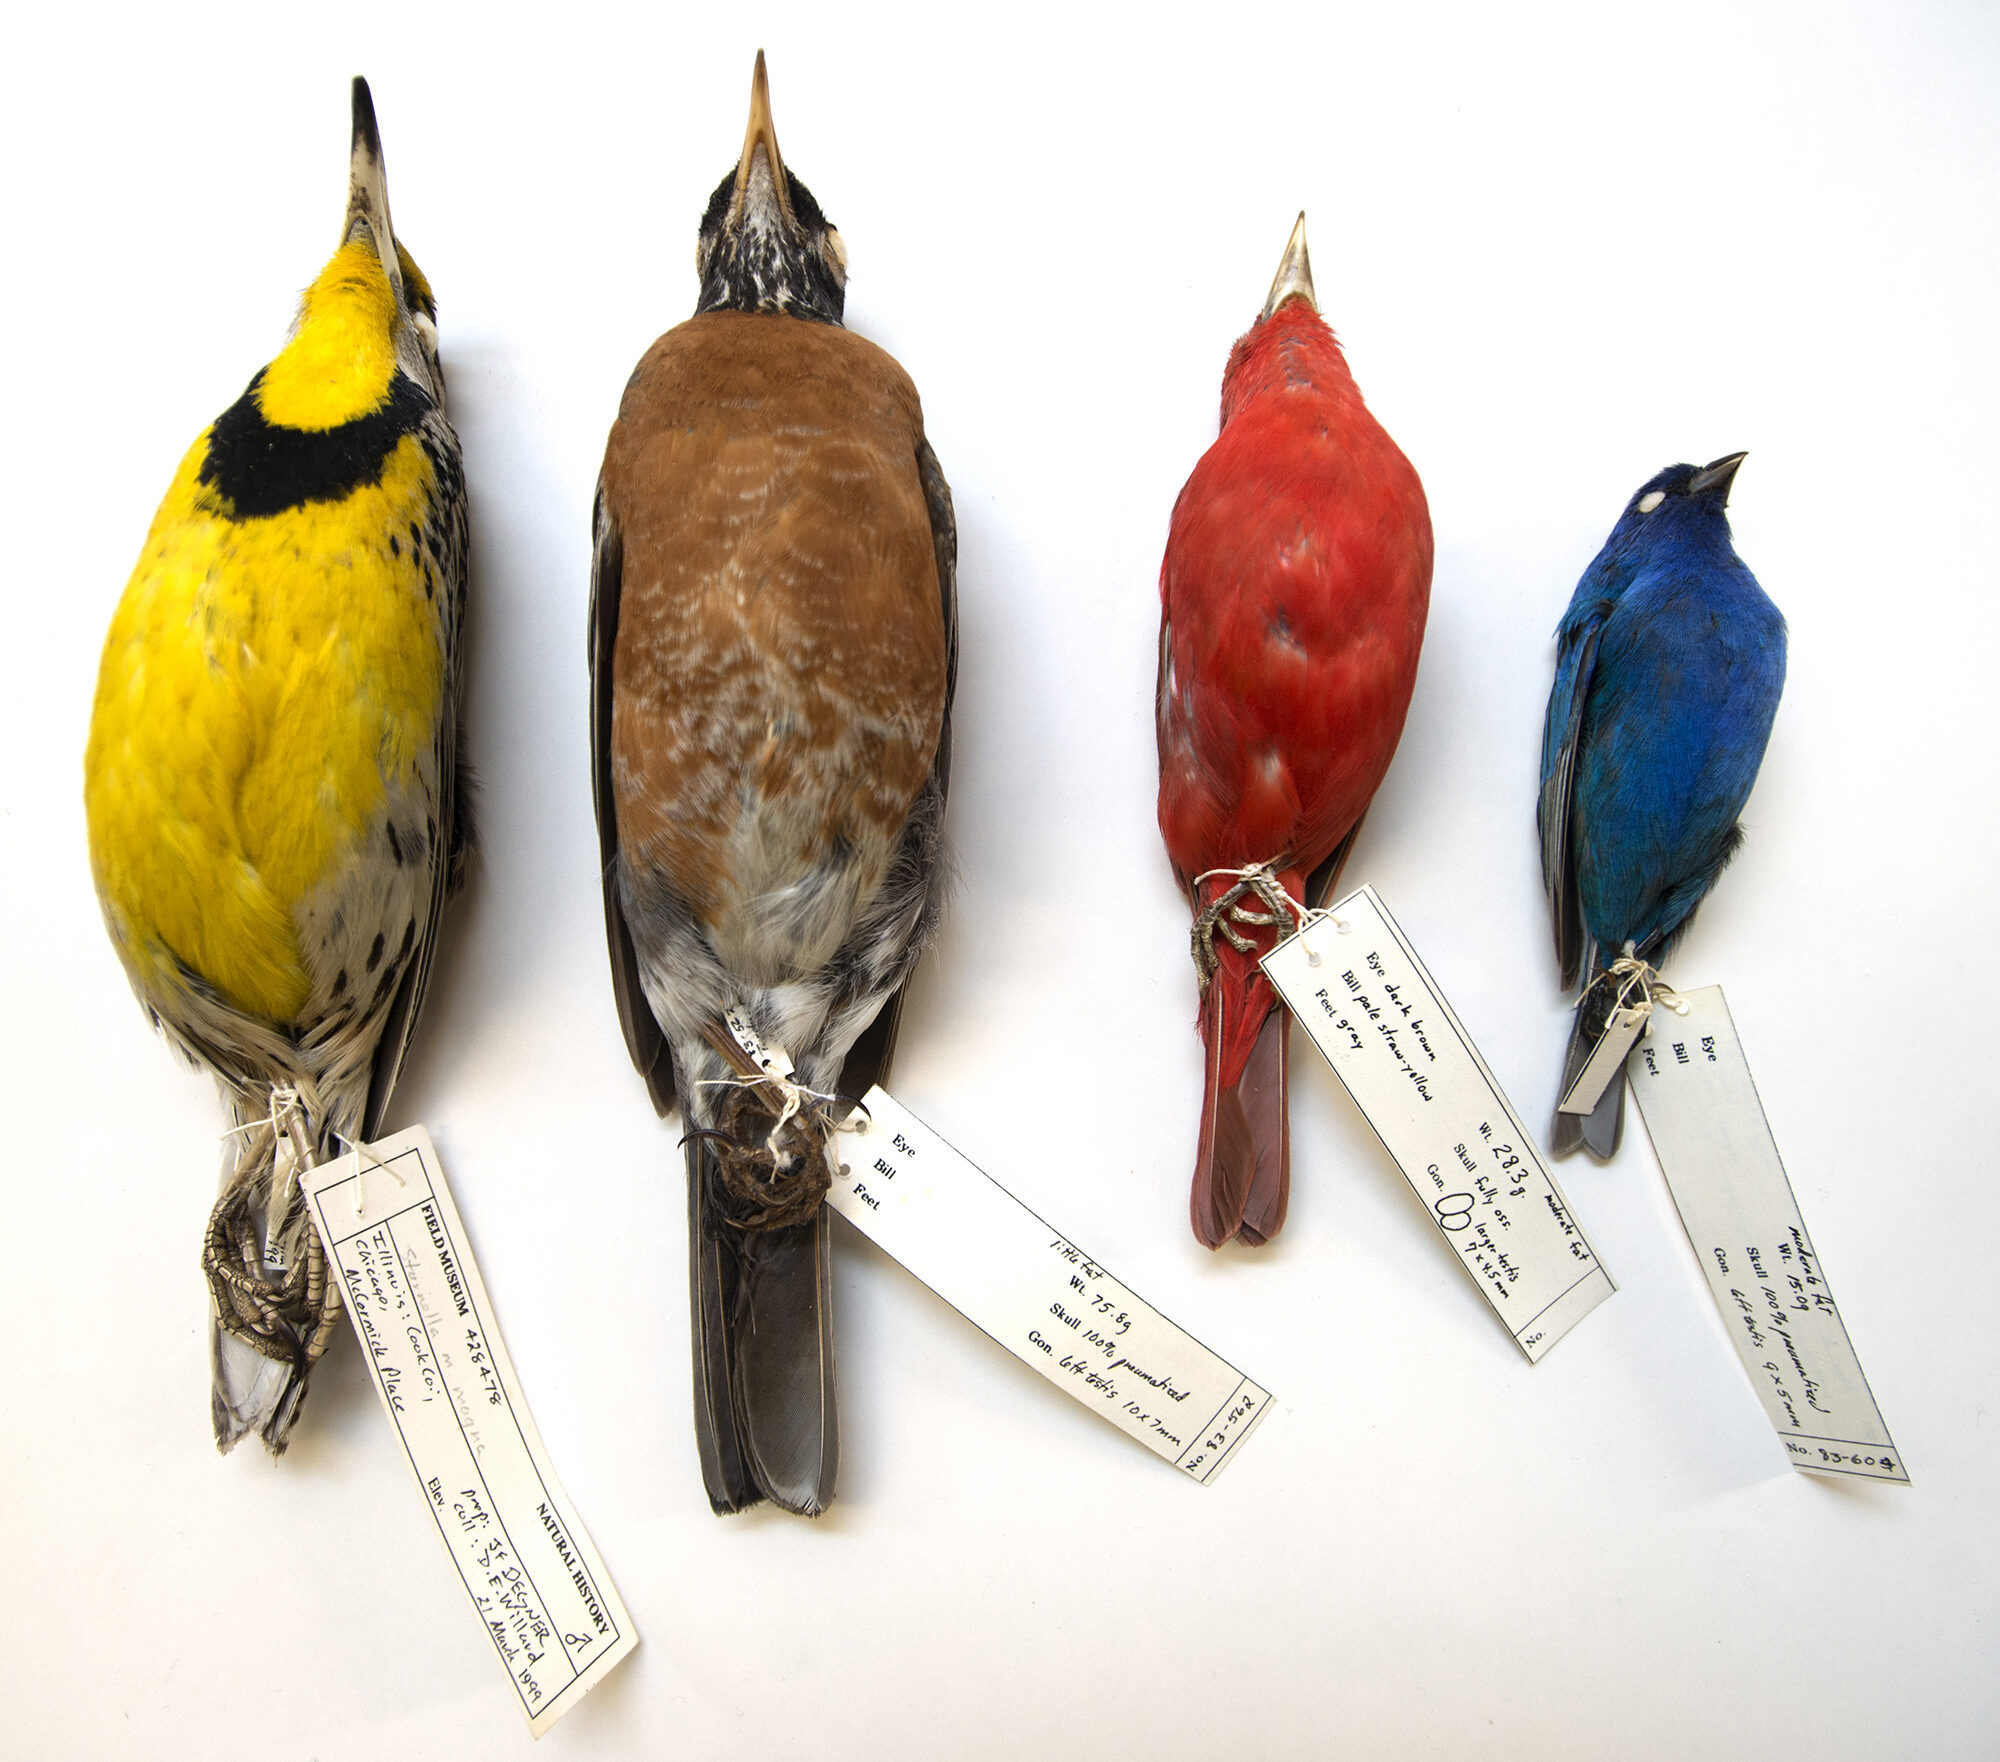 Algunas de las aves recolectadas en el McCormick Place de Chicago que se encuentran en las colecciones del Field Museum, incluida una alondra oriental (a la izquierda) y un empavesado de índigo (a la derecha). Crédito de la imagen: Field Museum, Karen Bean.